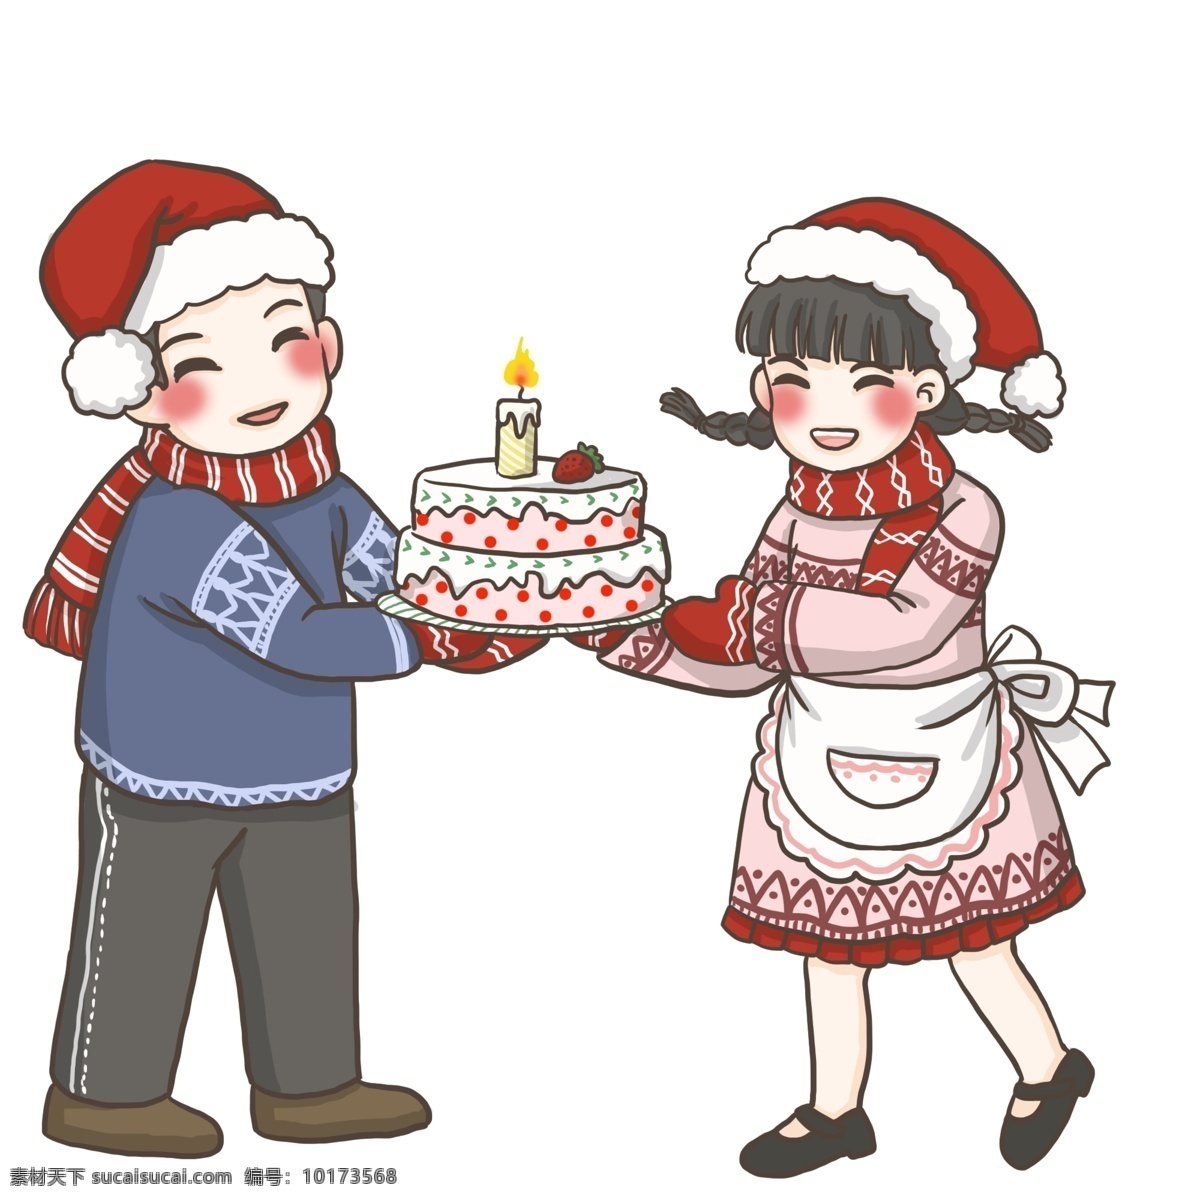 情侣 圣诞 蛋糕 冬天 冬装 圣诞节 红色衣装 可爱风小贴纸 双人 温暖甜美 开心 圣诞蛋糕 情侣围巾 围裙